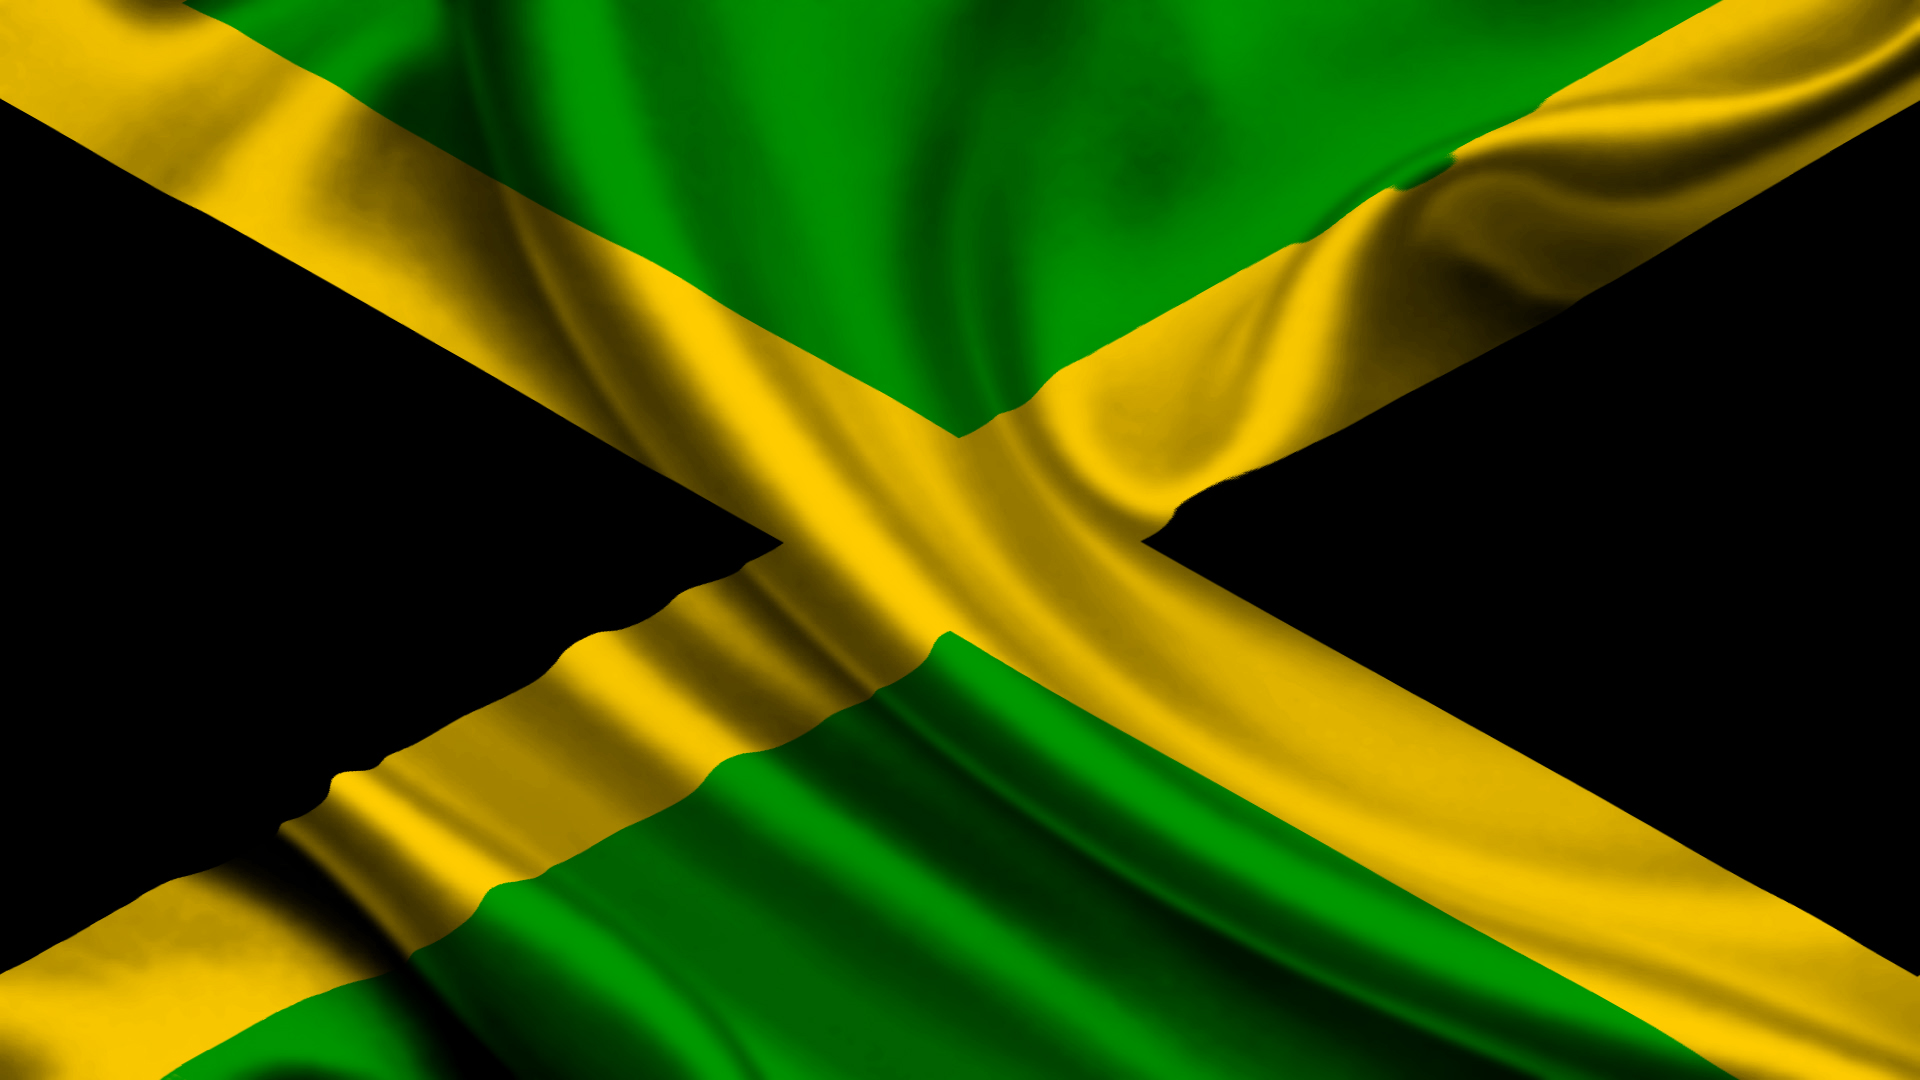 Jamaican patty - Wikipedia